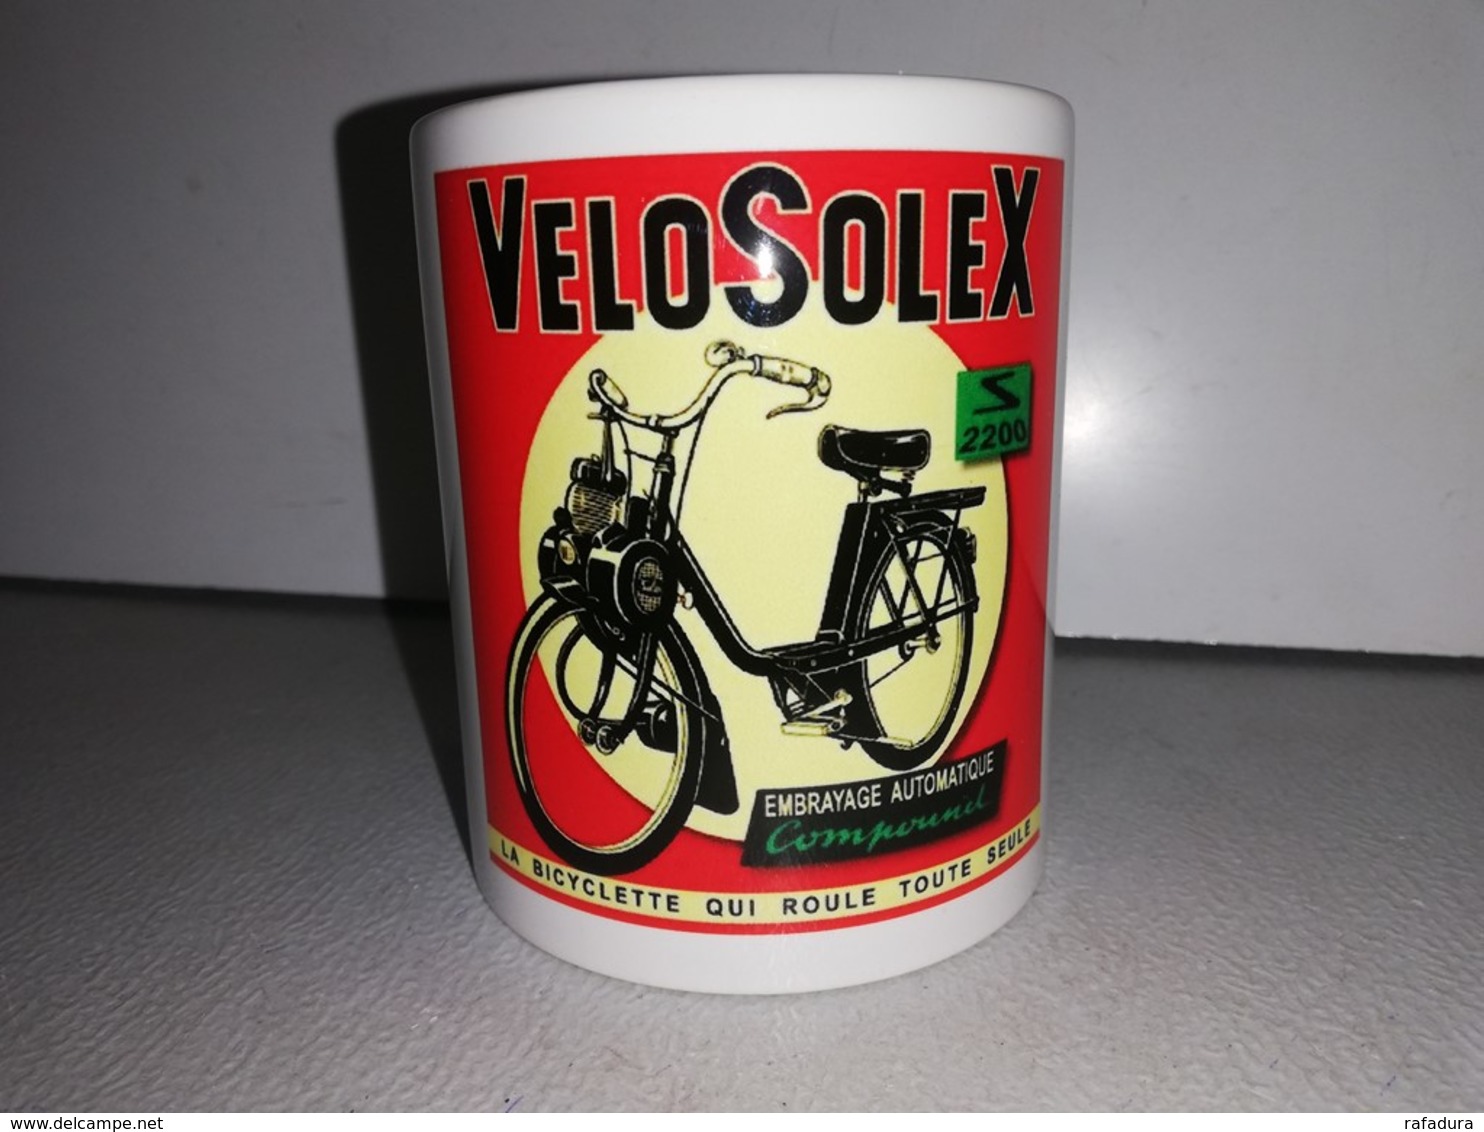 VELOSOLEX TENOR FLASH 3800 5000 3300 2200 1700 1400 TASSE Ceramique MUG COFFEE - Vehicles